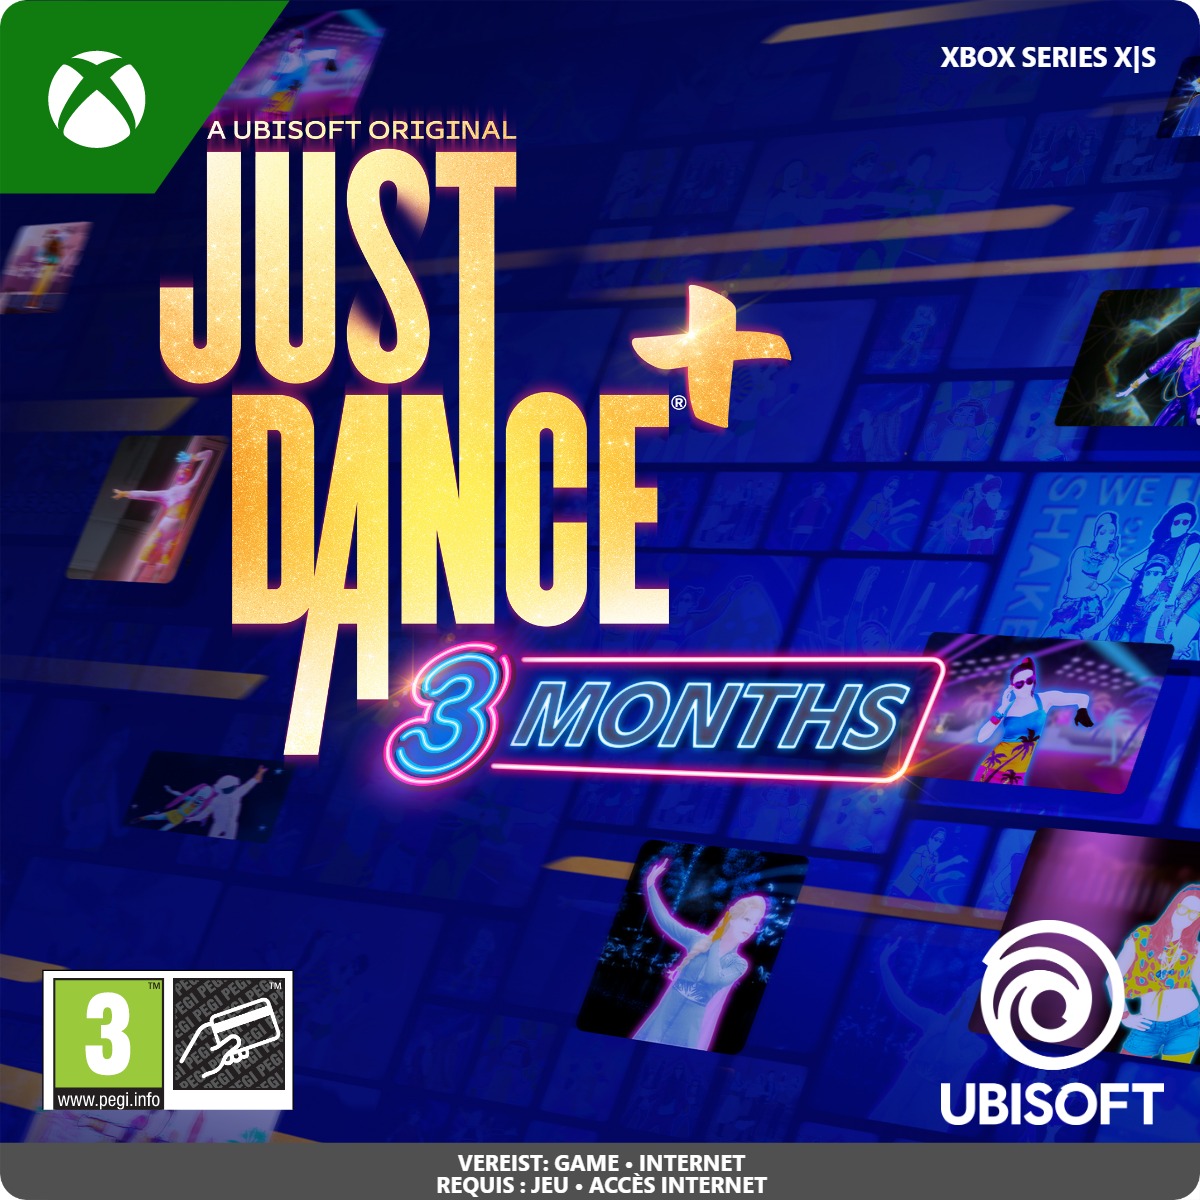 Just Dance Plus 3 months